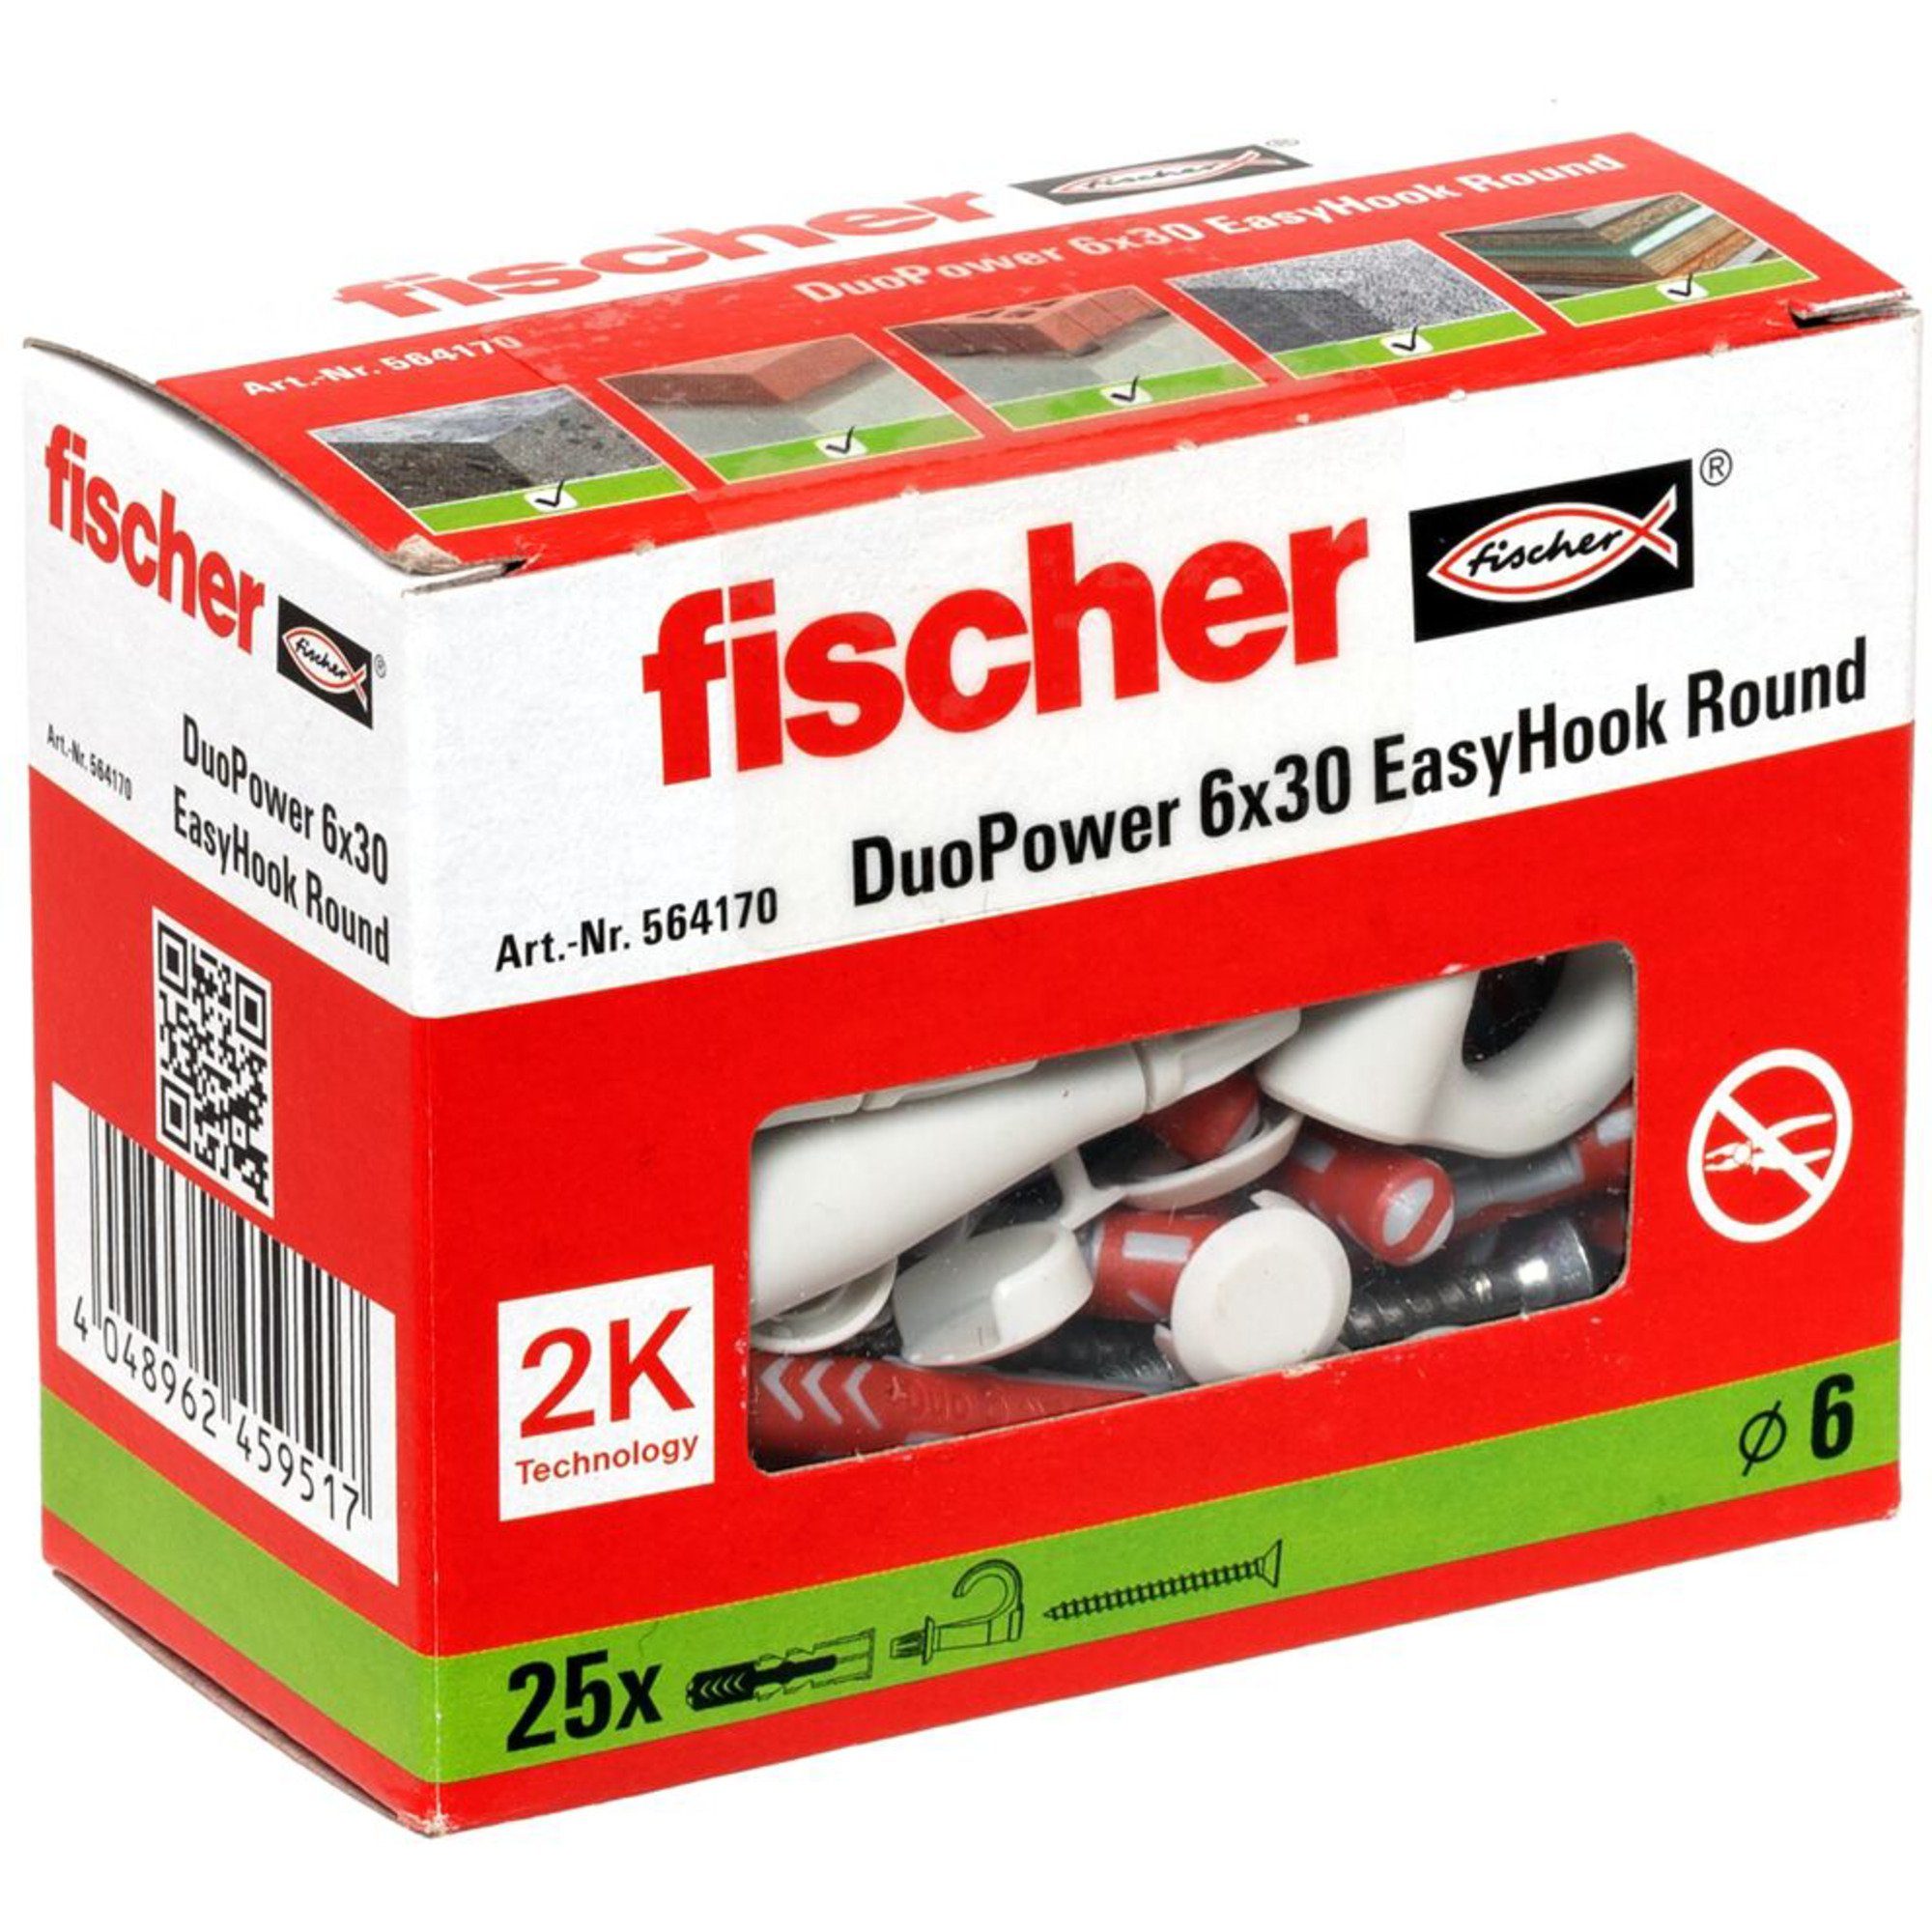 Fischer Universaldübel fischer Round DuoPower 6x30, Dübel, EasyHook (25